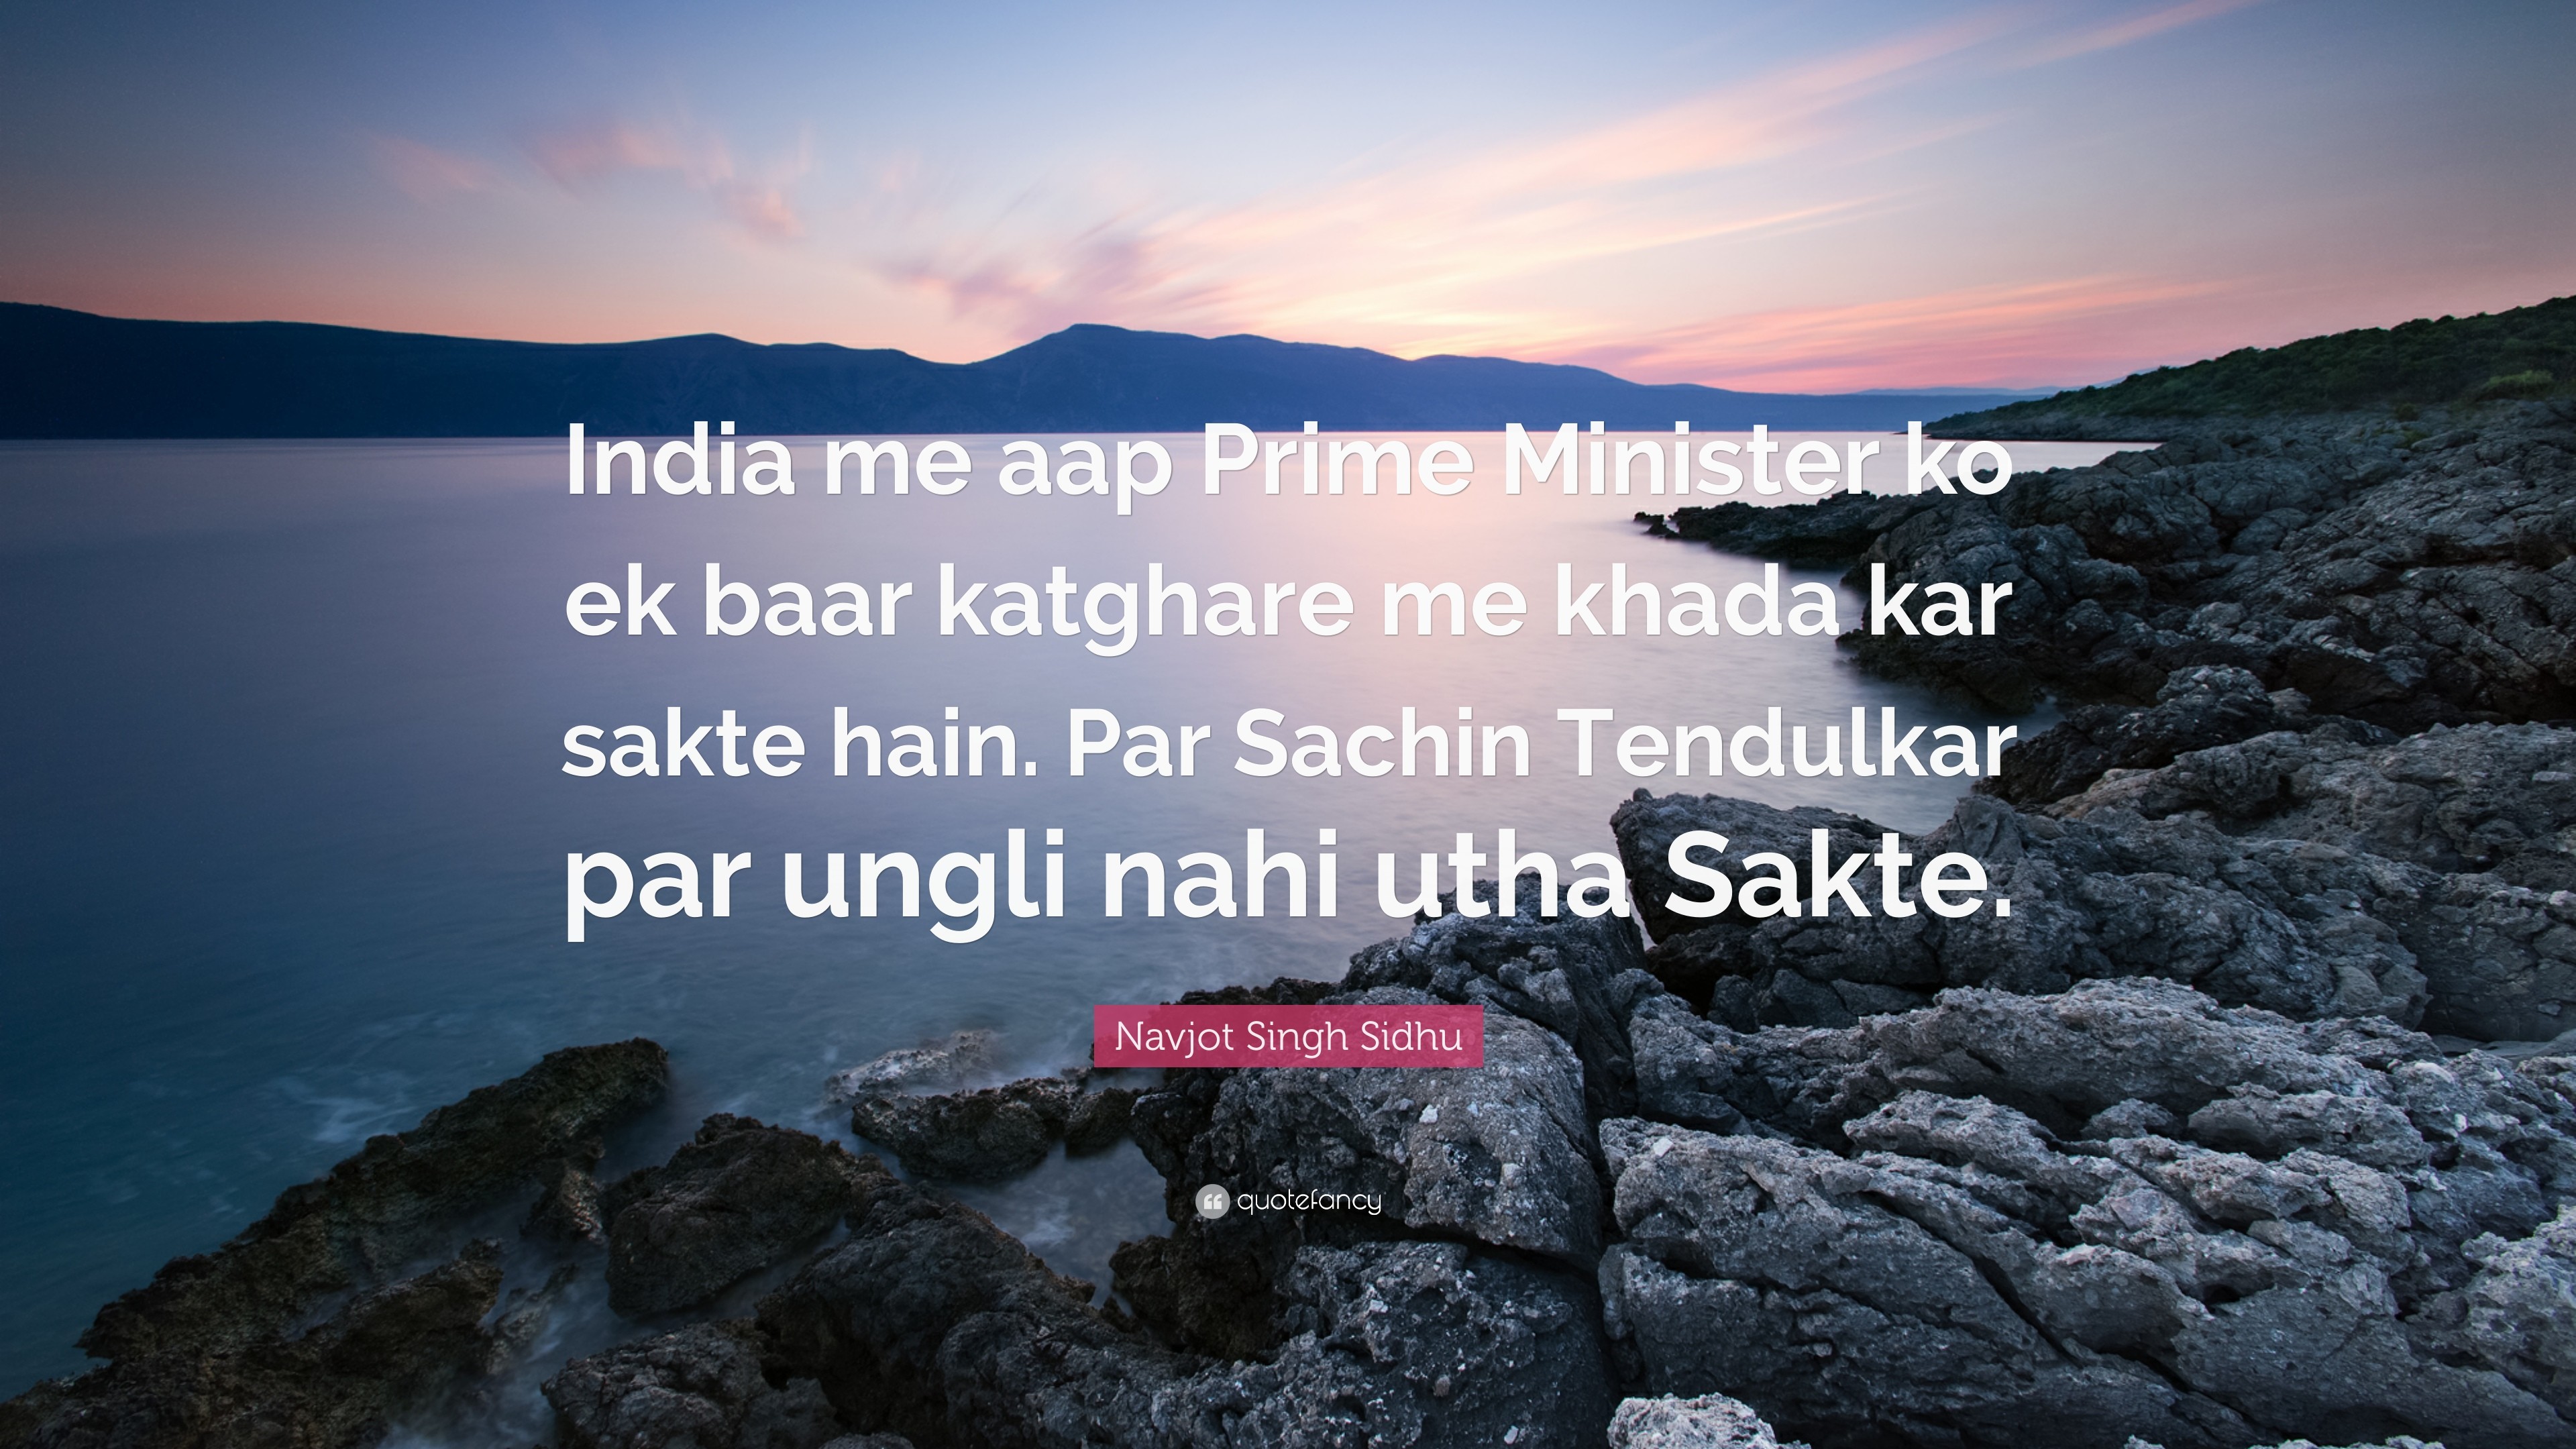 3840x2160 Navjot Singh Sidhu Quote: “India me aap Prime Minister ko ek baar katghare  me